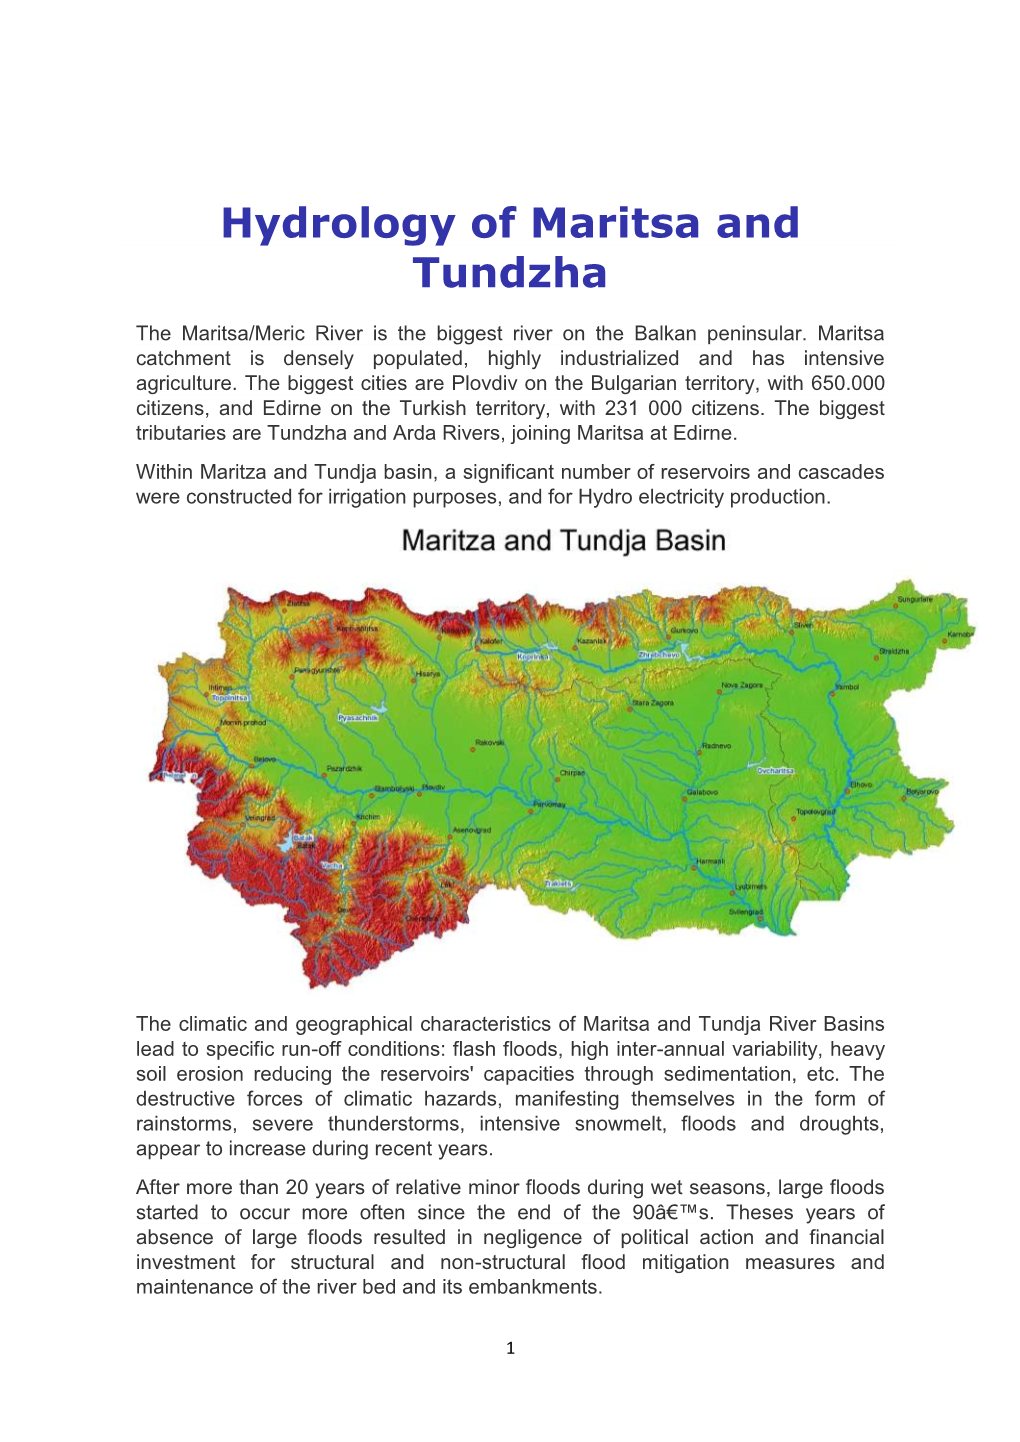 Hydrology of Maritsa and Tundzha